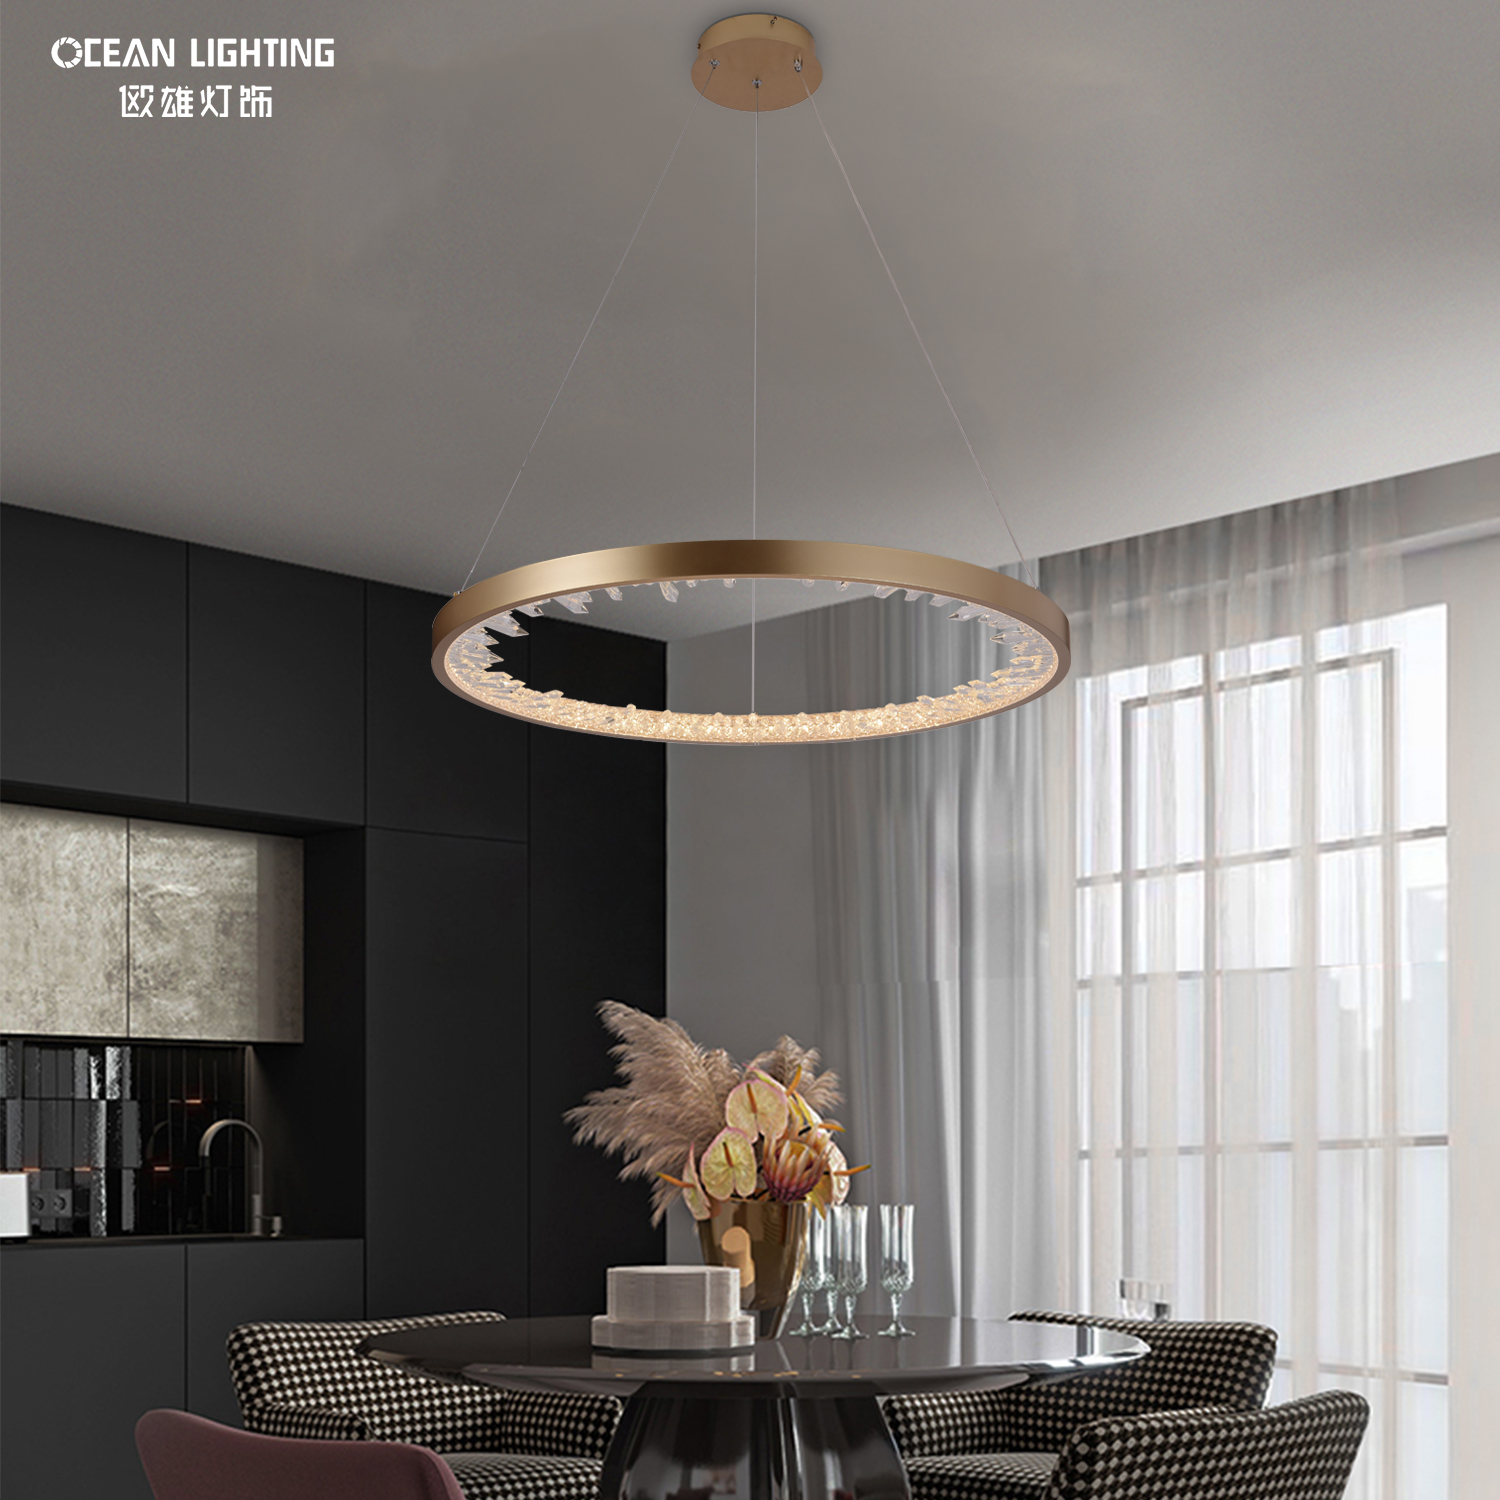 OCEAN LAMP Pendant Light LED Design Simple Modern Decorative Lighting Fixture Ring Chandelier for Hotel